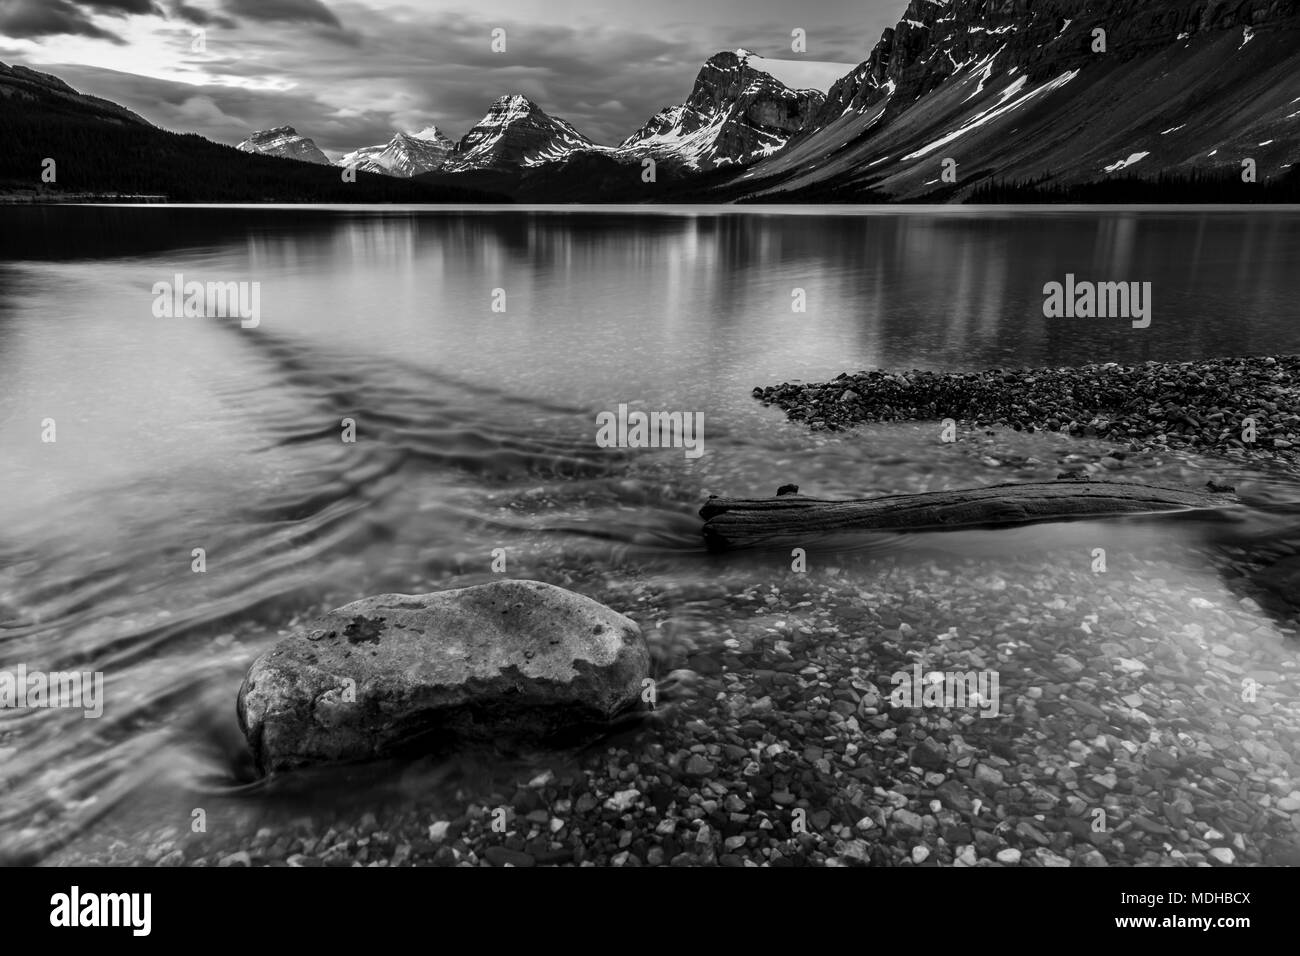 Quartier tranquille, l'eau claire le long du littoral d'un lac, dans le parc national Banff, Alberta, Canada Banque D'Images